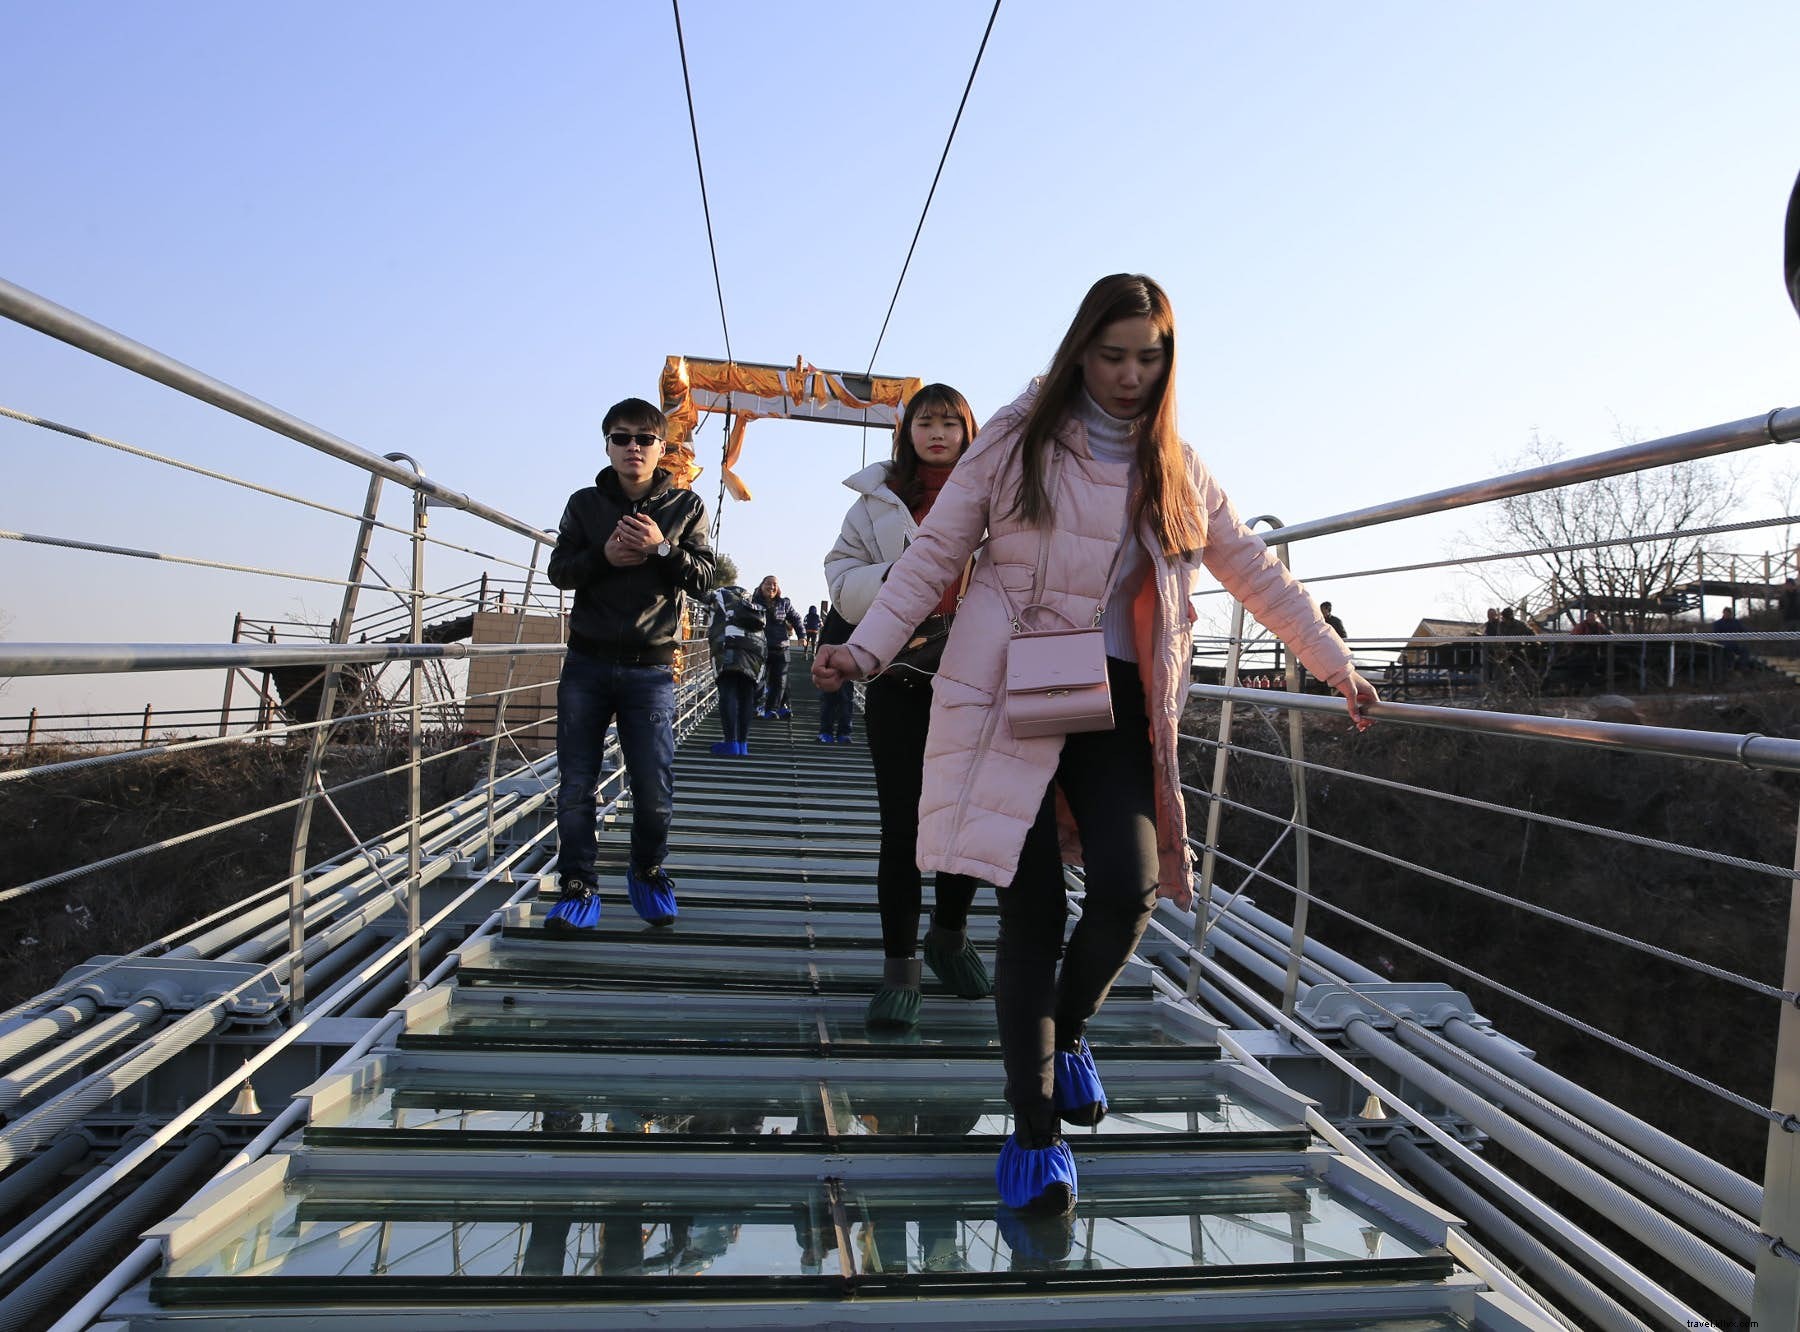 Sfida la gravità sul nuovo ponte di vetro da record della Cina 